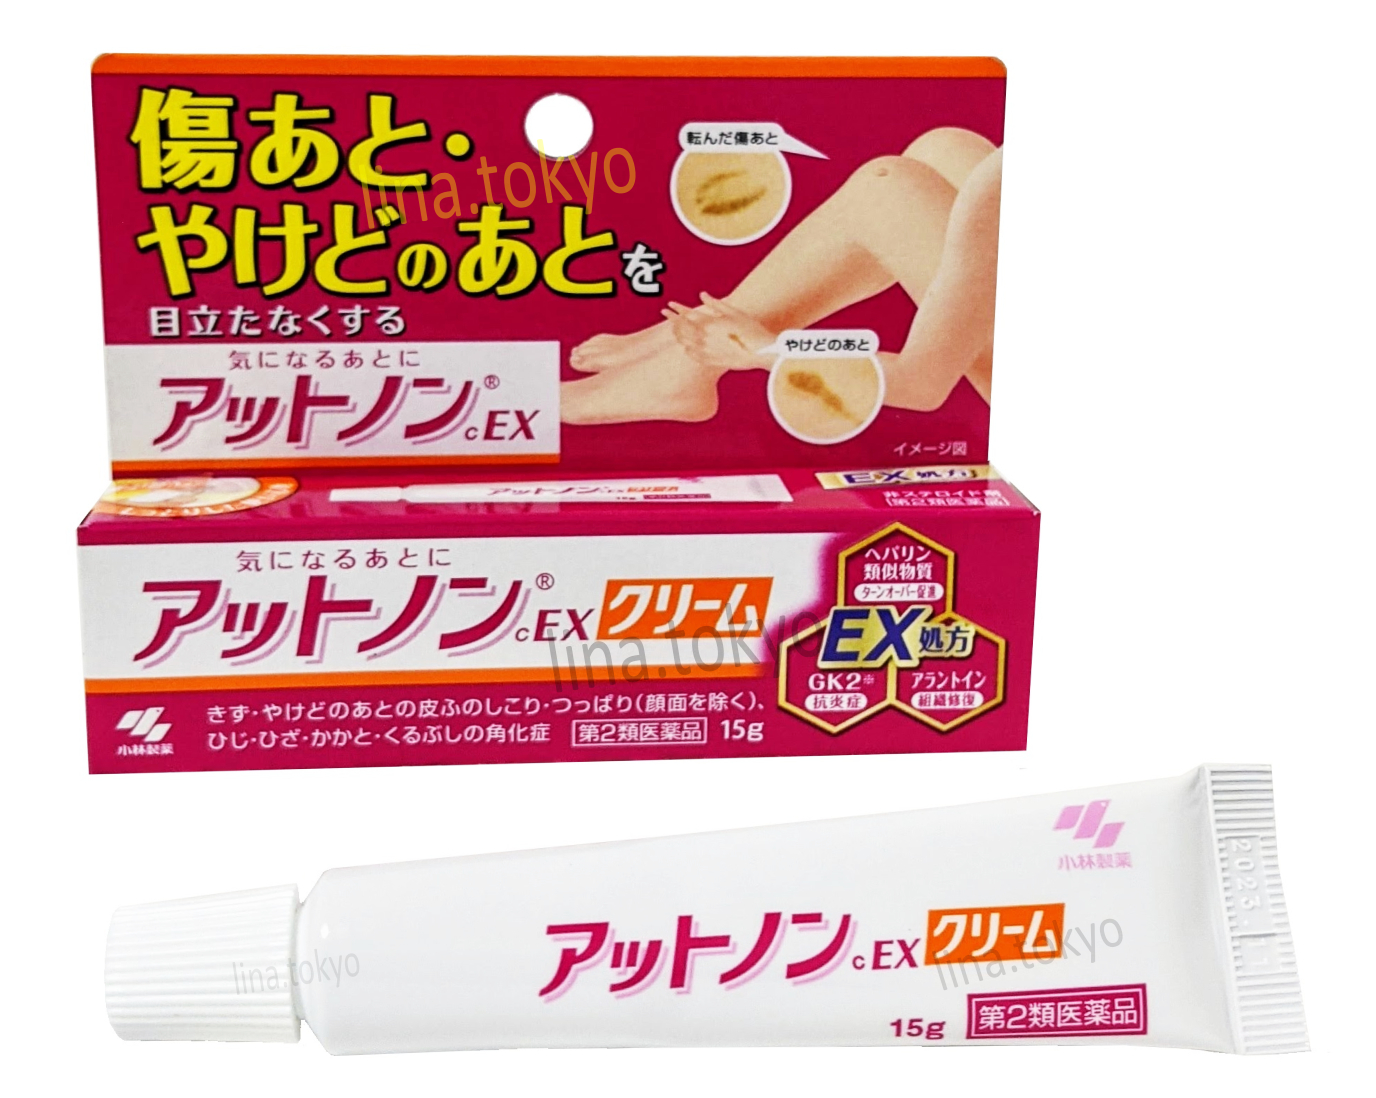 Thuốc trị sẹo nhật bản Kobayashi Atnon Ex dạng kem 15g trị sẹo lồi, sẹo thâm, da chai sừng, da khô nứt nẻ (H4009) (Miễn phí giao hàng)